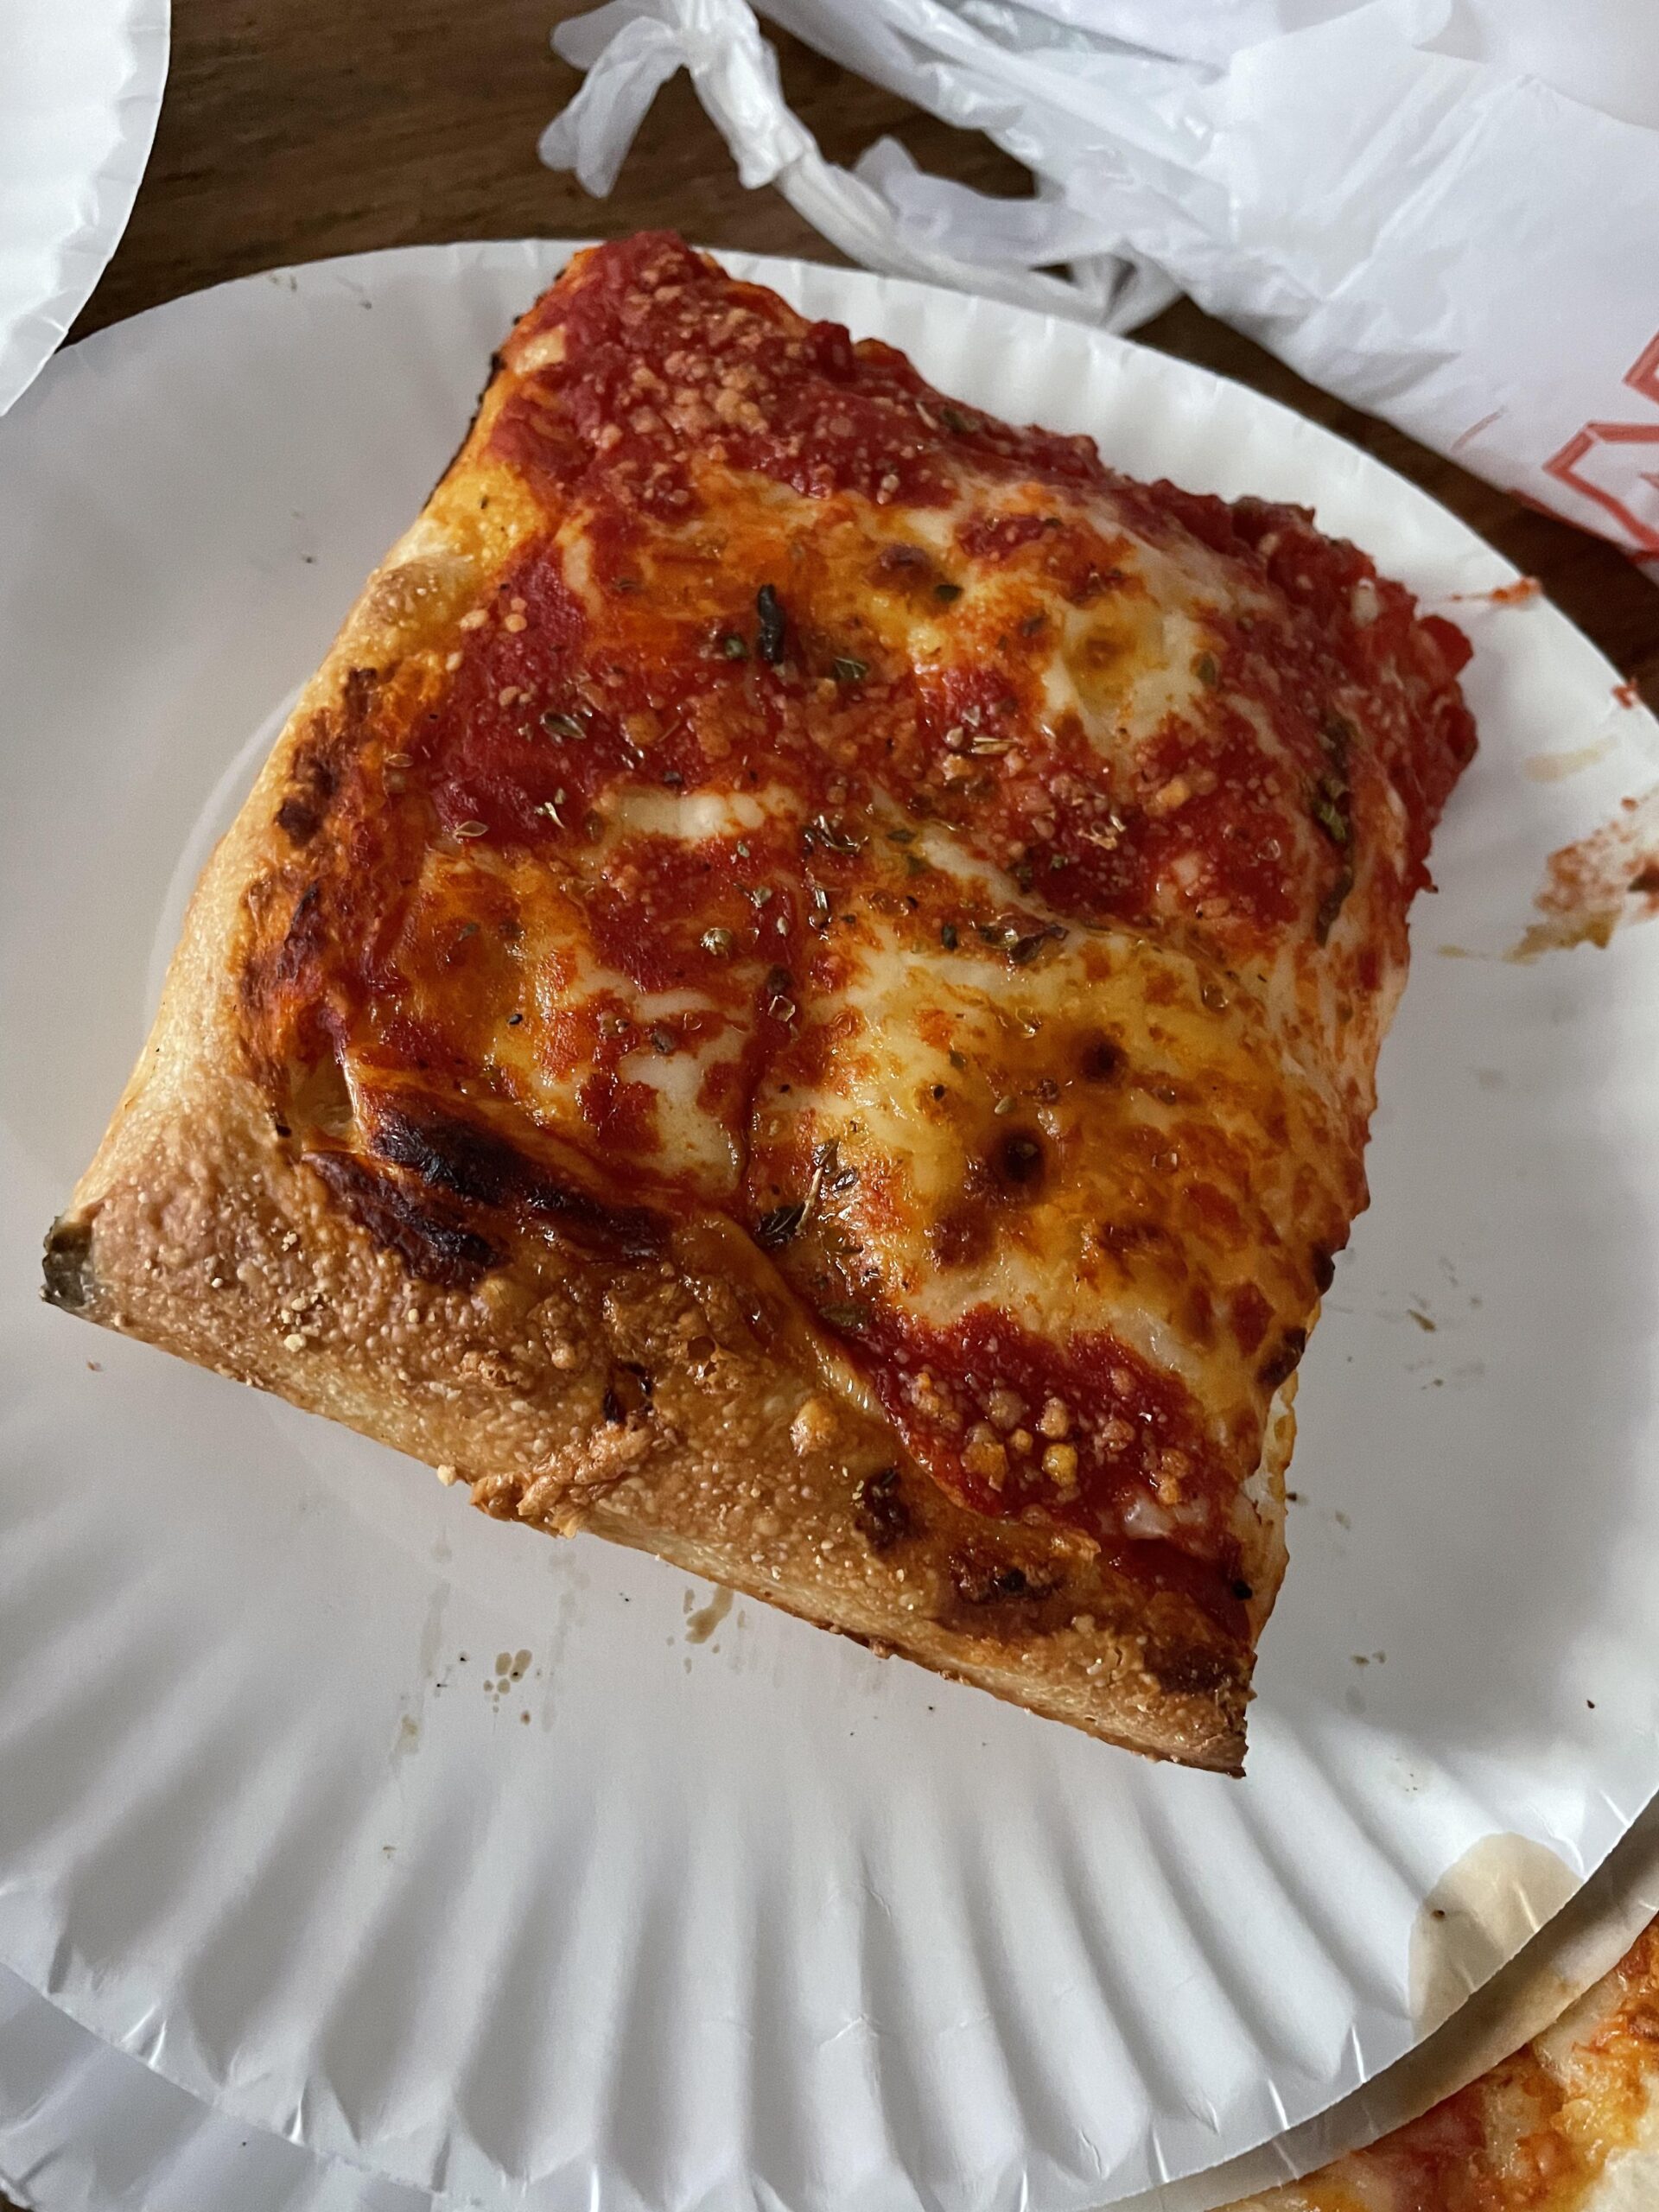 PIZZA FACTORY LOCATED AT LONG ISLAND CITY NY : GRANDPA PIZZA SLICE